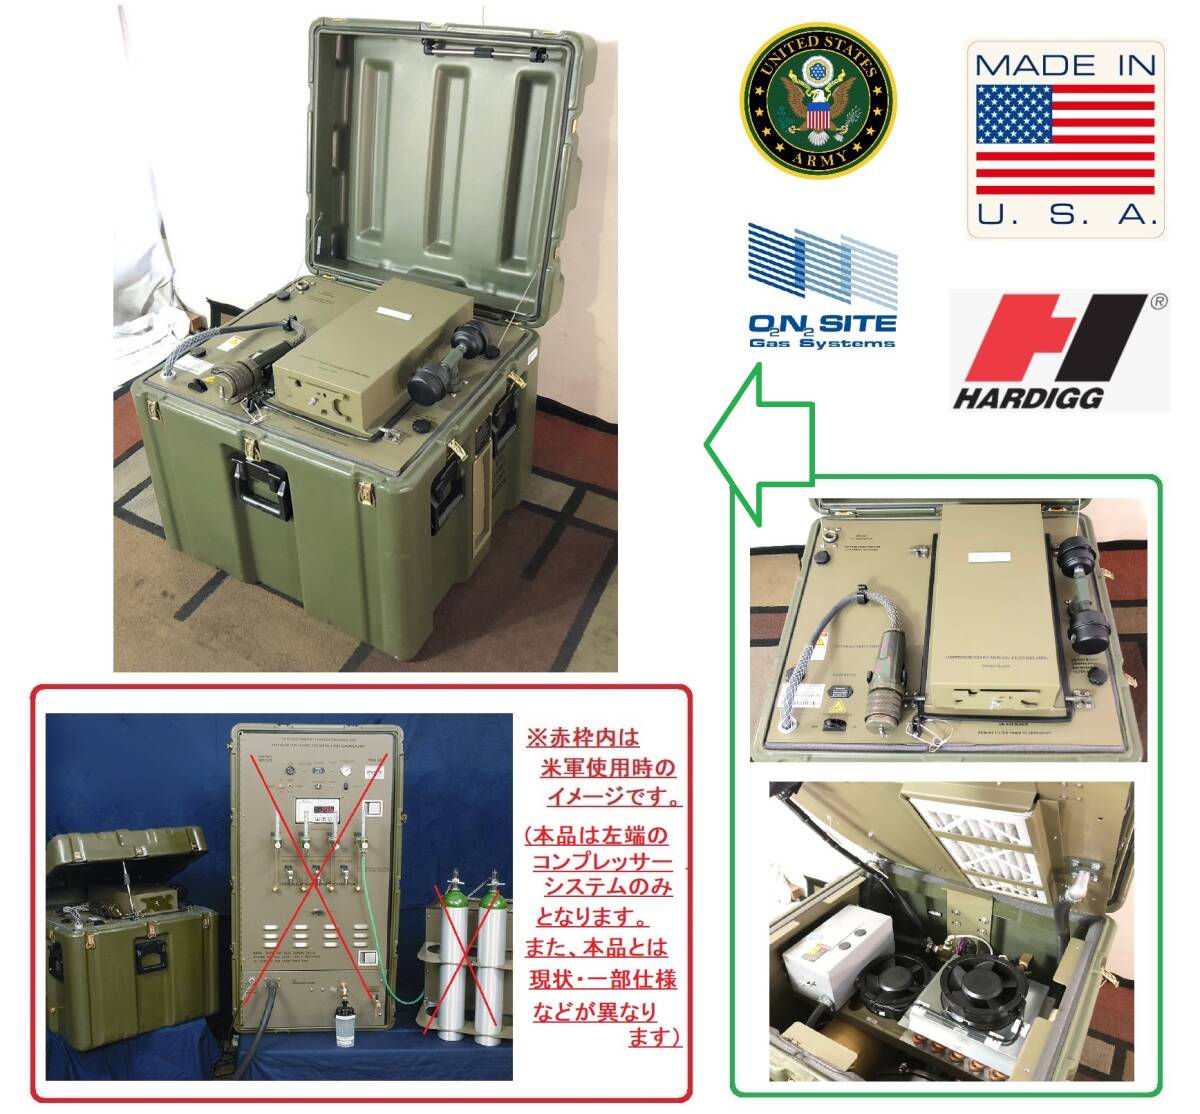 【米軍放出品】エアーコンプレッサー ポータブル酸素発生器用コンプレッサー POGS-33 US-ARMY(C)☆BC20LM-N#24の画像1